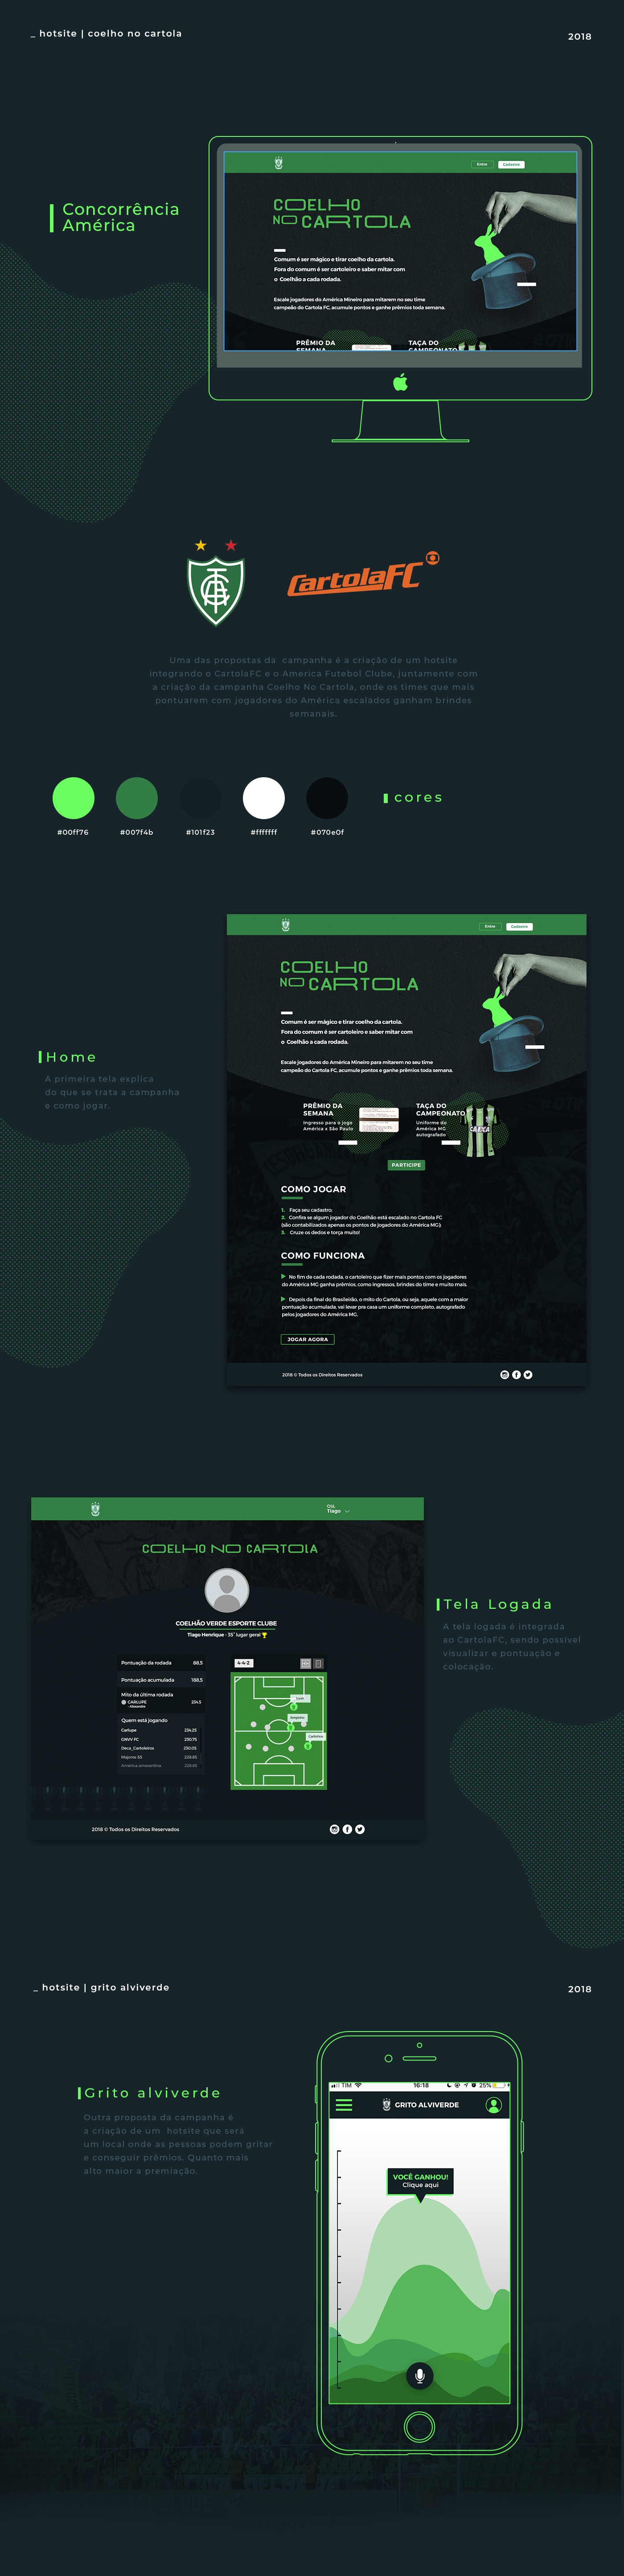 site Web design UI futebol america ux campanha Concorrência Interface